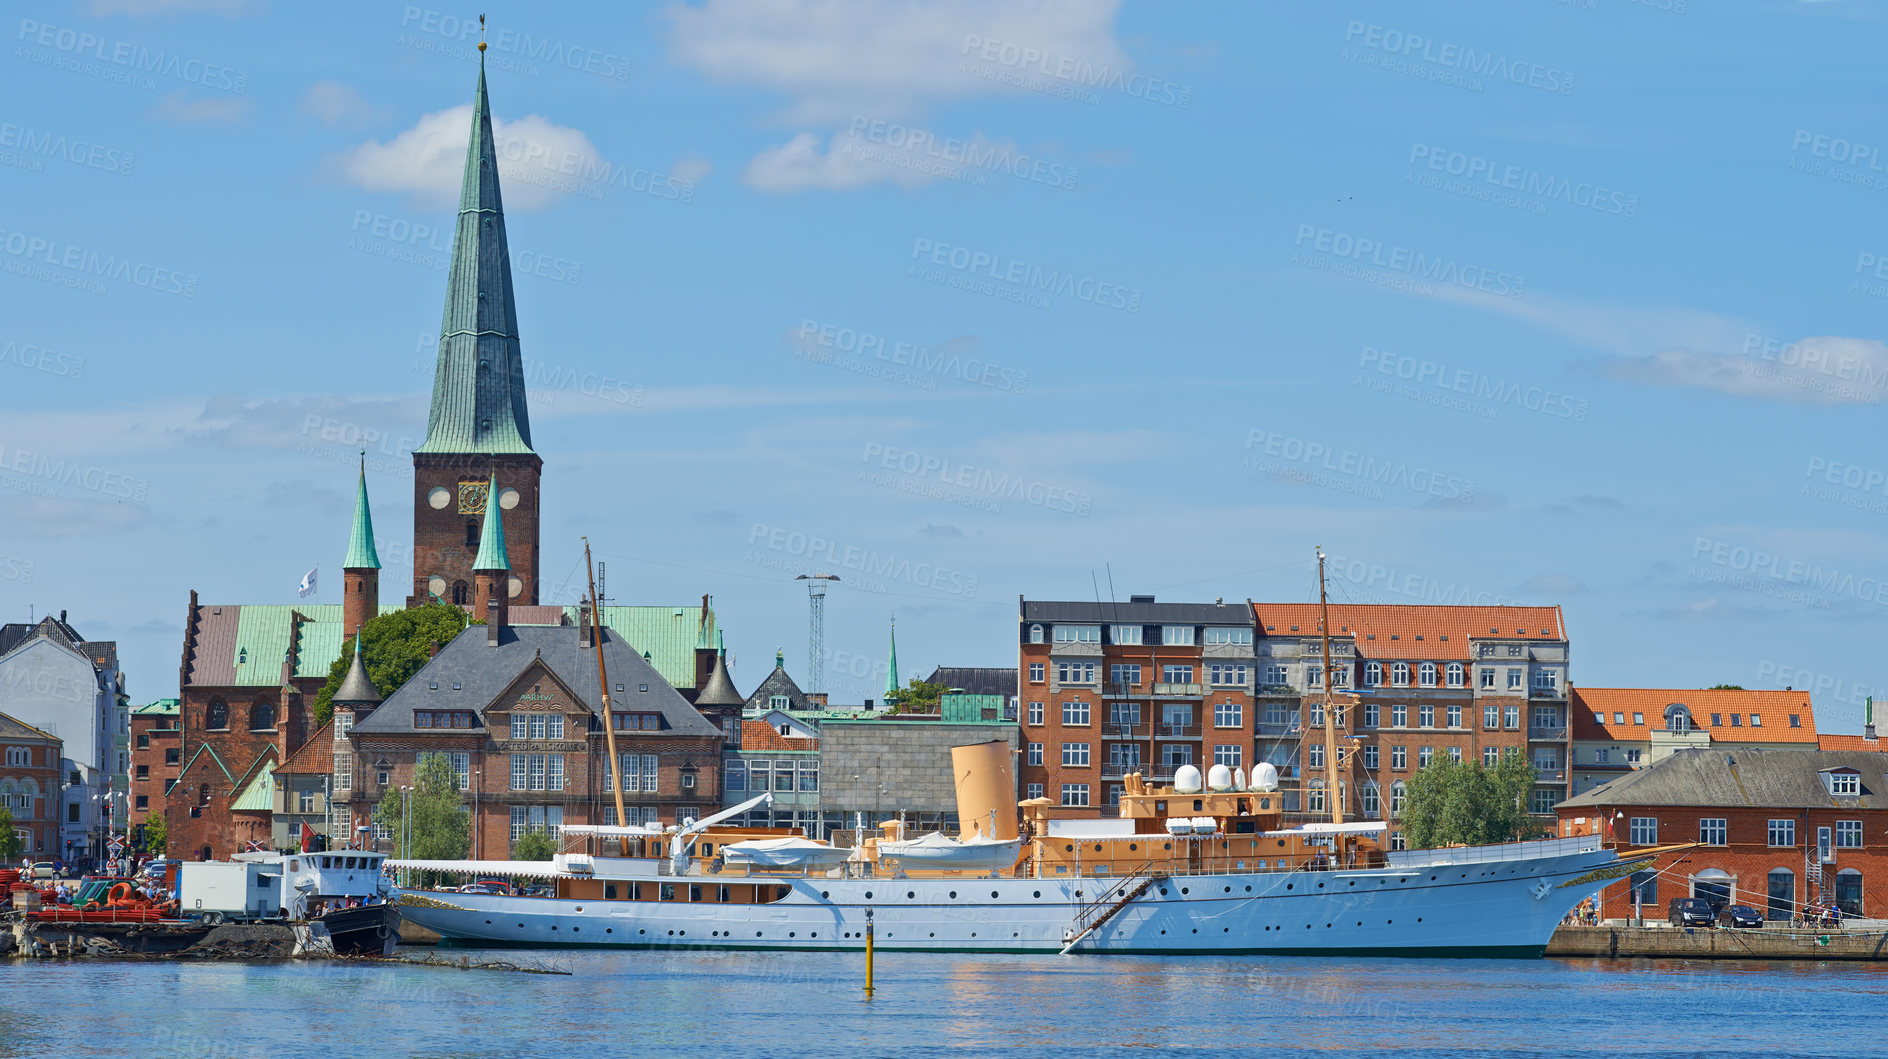 Buy stock photo The HDMY Dannebrog in the harbour in Aarhus, Denmark